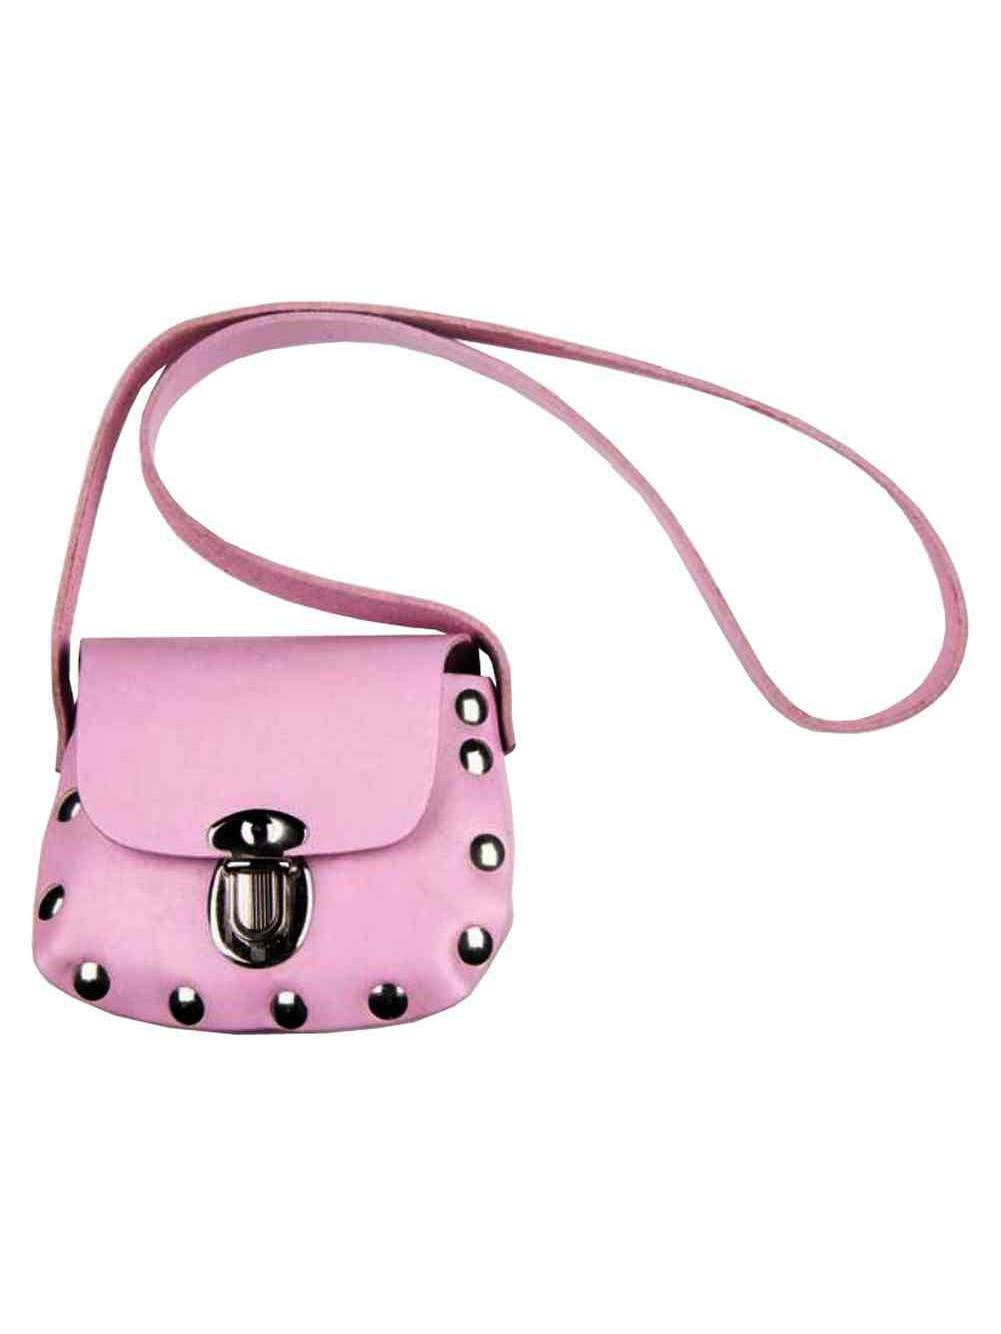 Kids Owl Faux Leather Shoulder Bag for Little Girls Toddlers Crossbody Handbag Purses Pink 